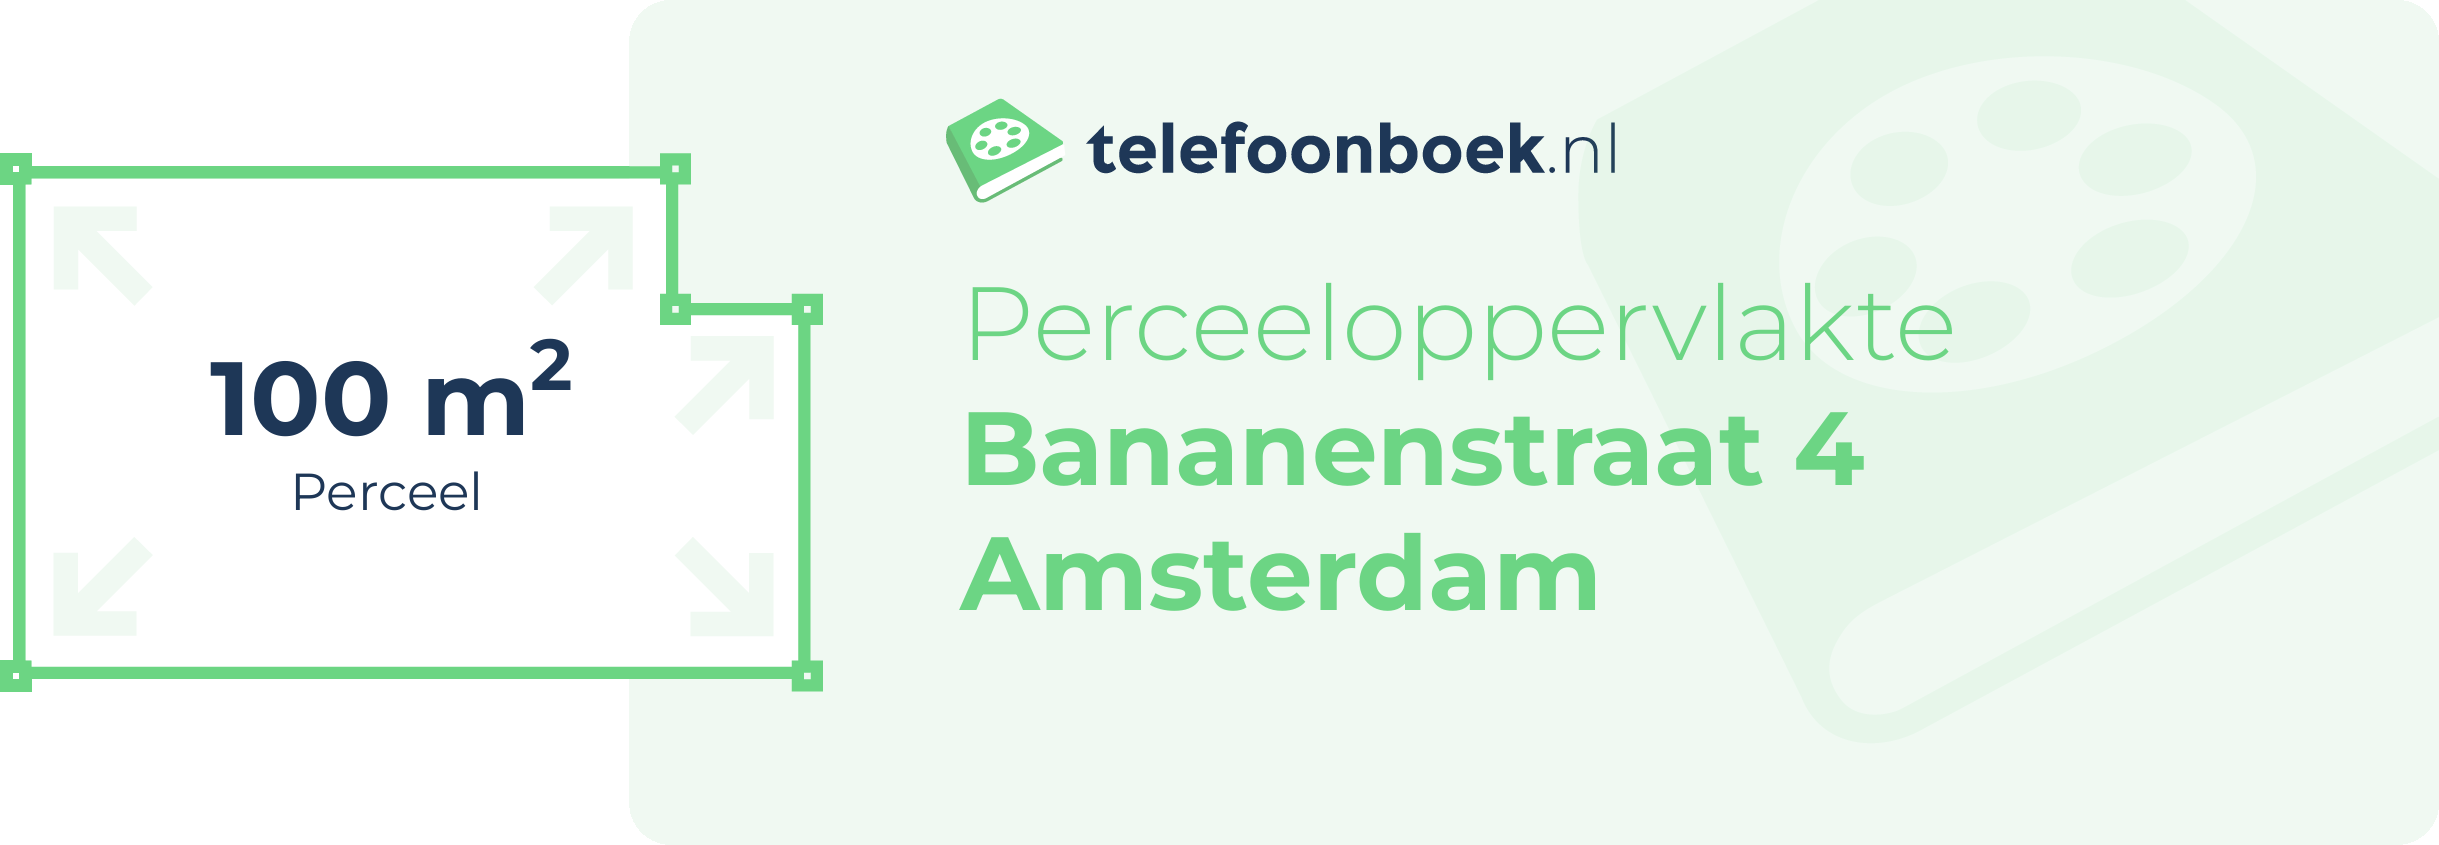 Perceeloppervlakte Bananenstraat 4 Amsterdam